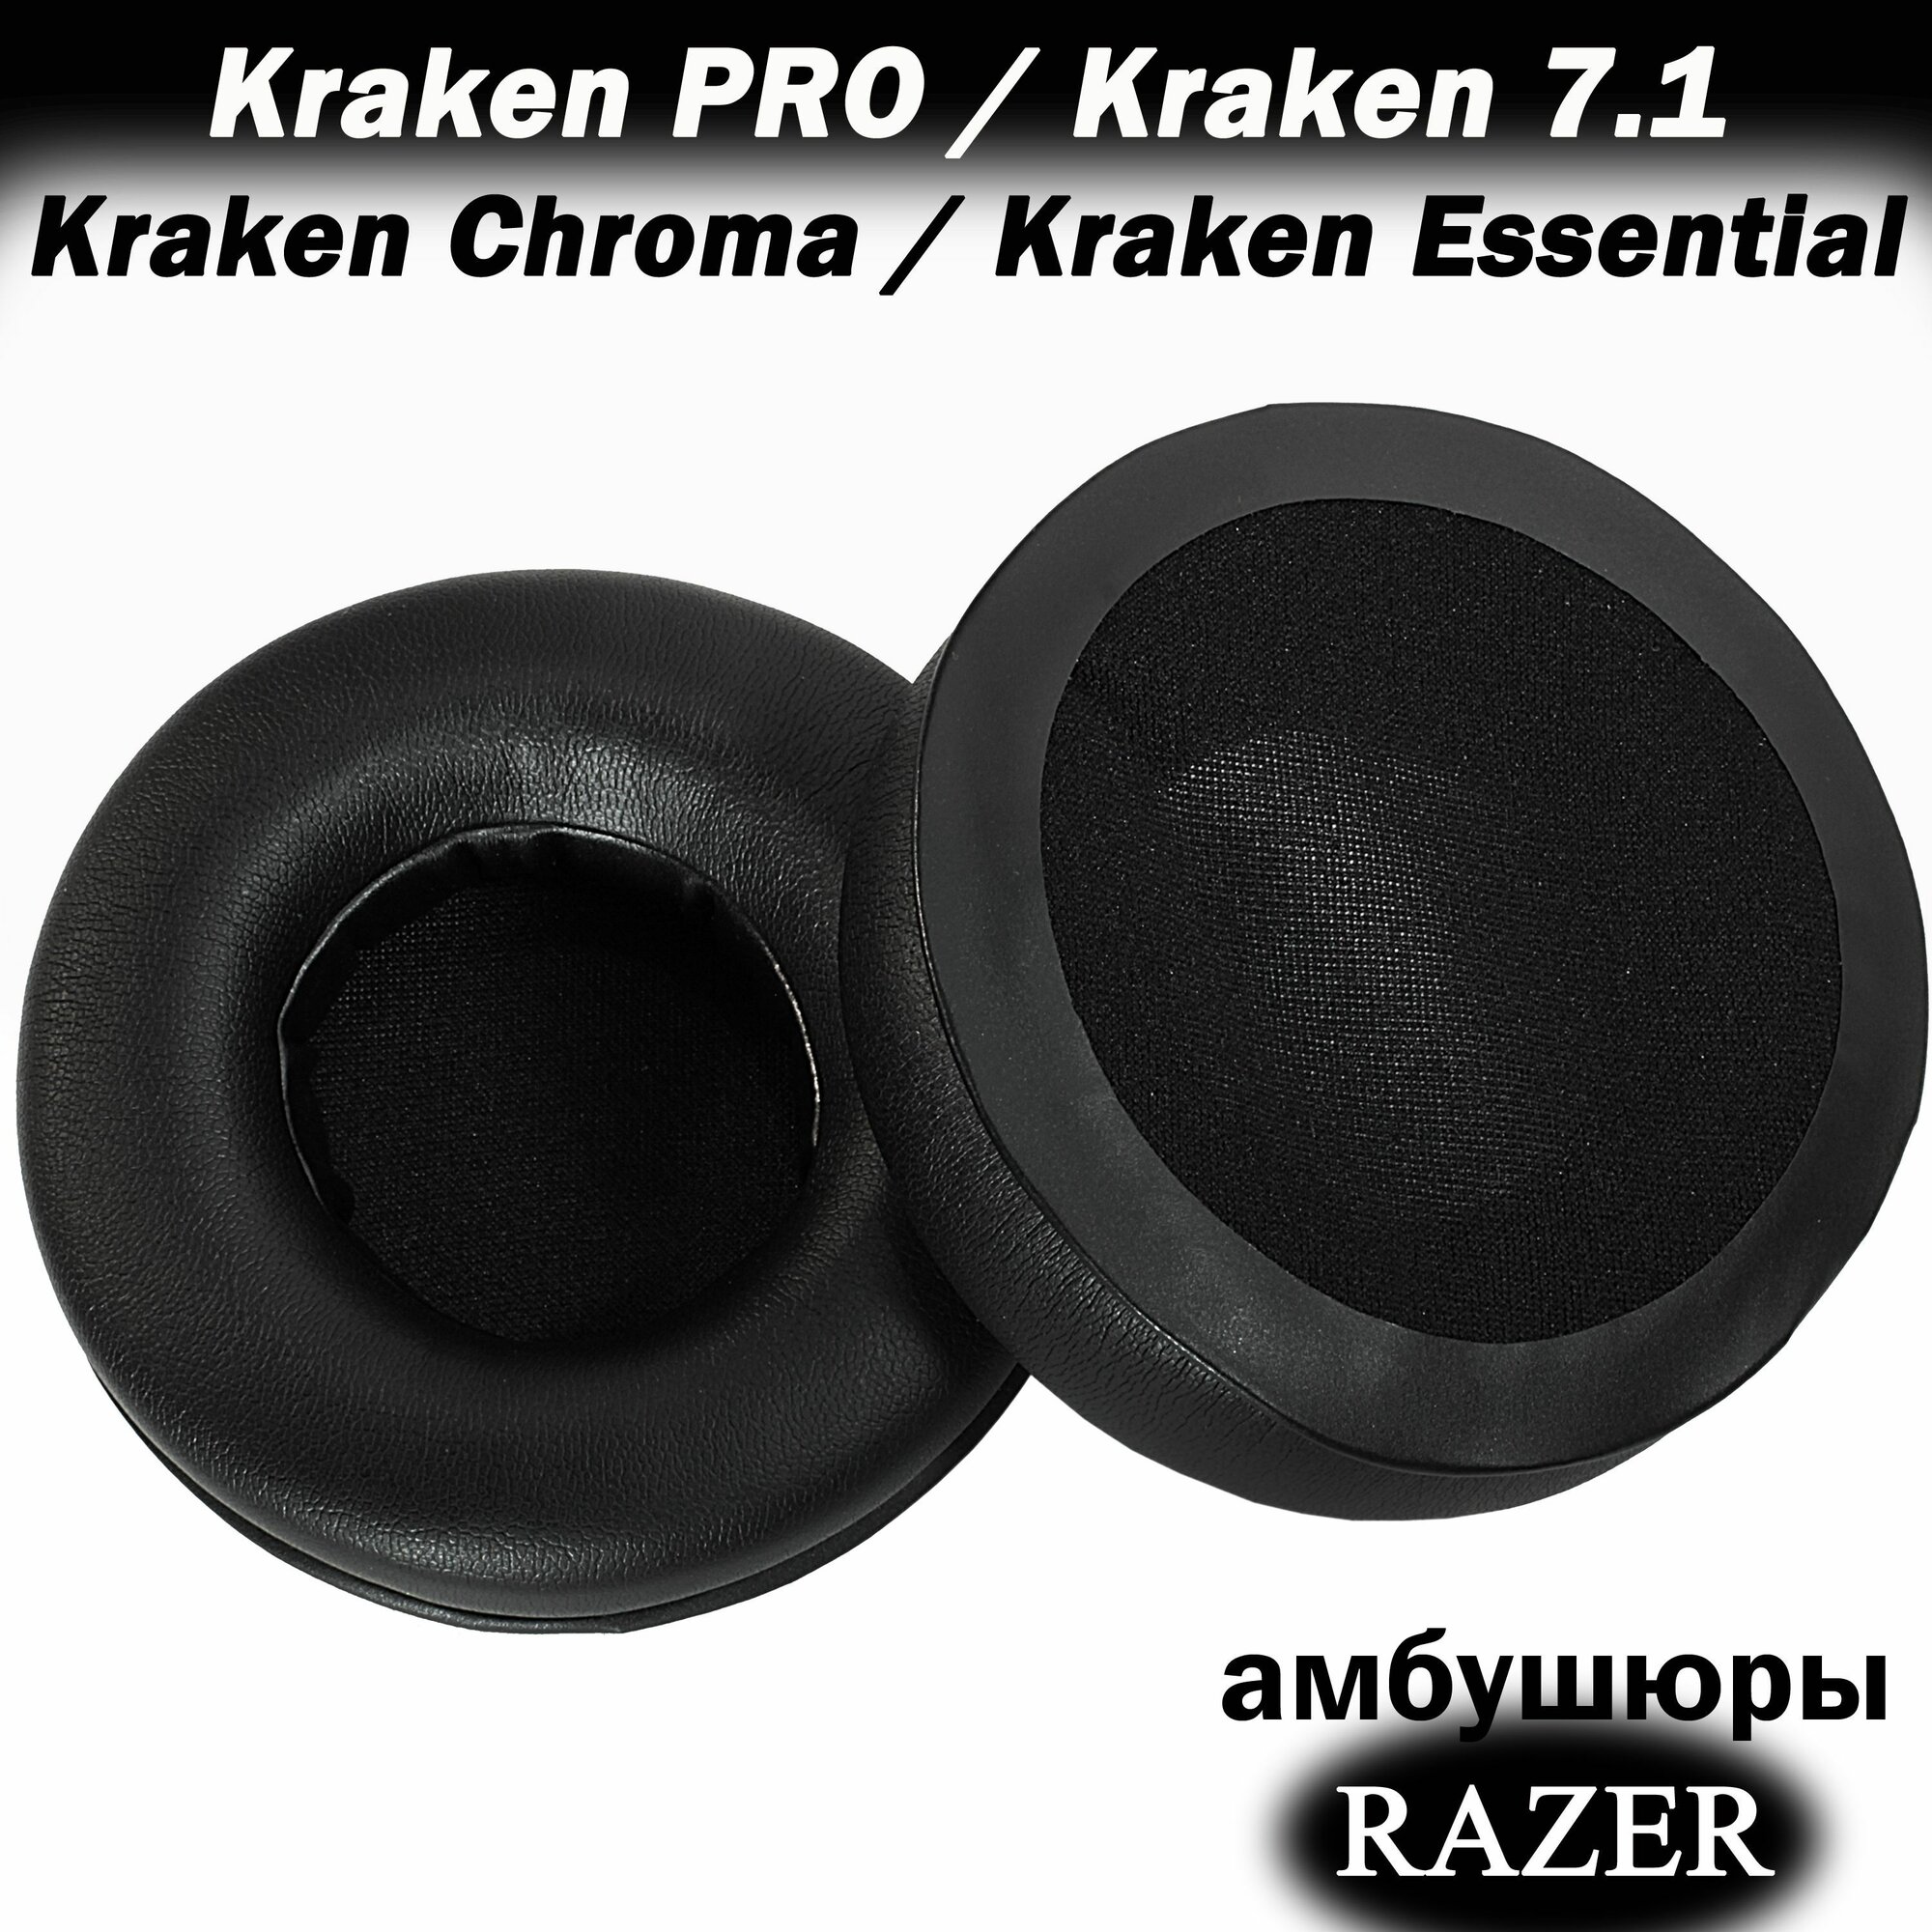 Амбушюры для наушников Razer Kraken Pro / Kraken 7.1 / Kraken Chroma / Kraken Essential